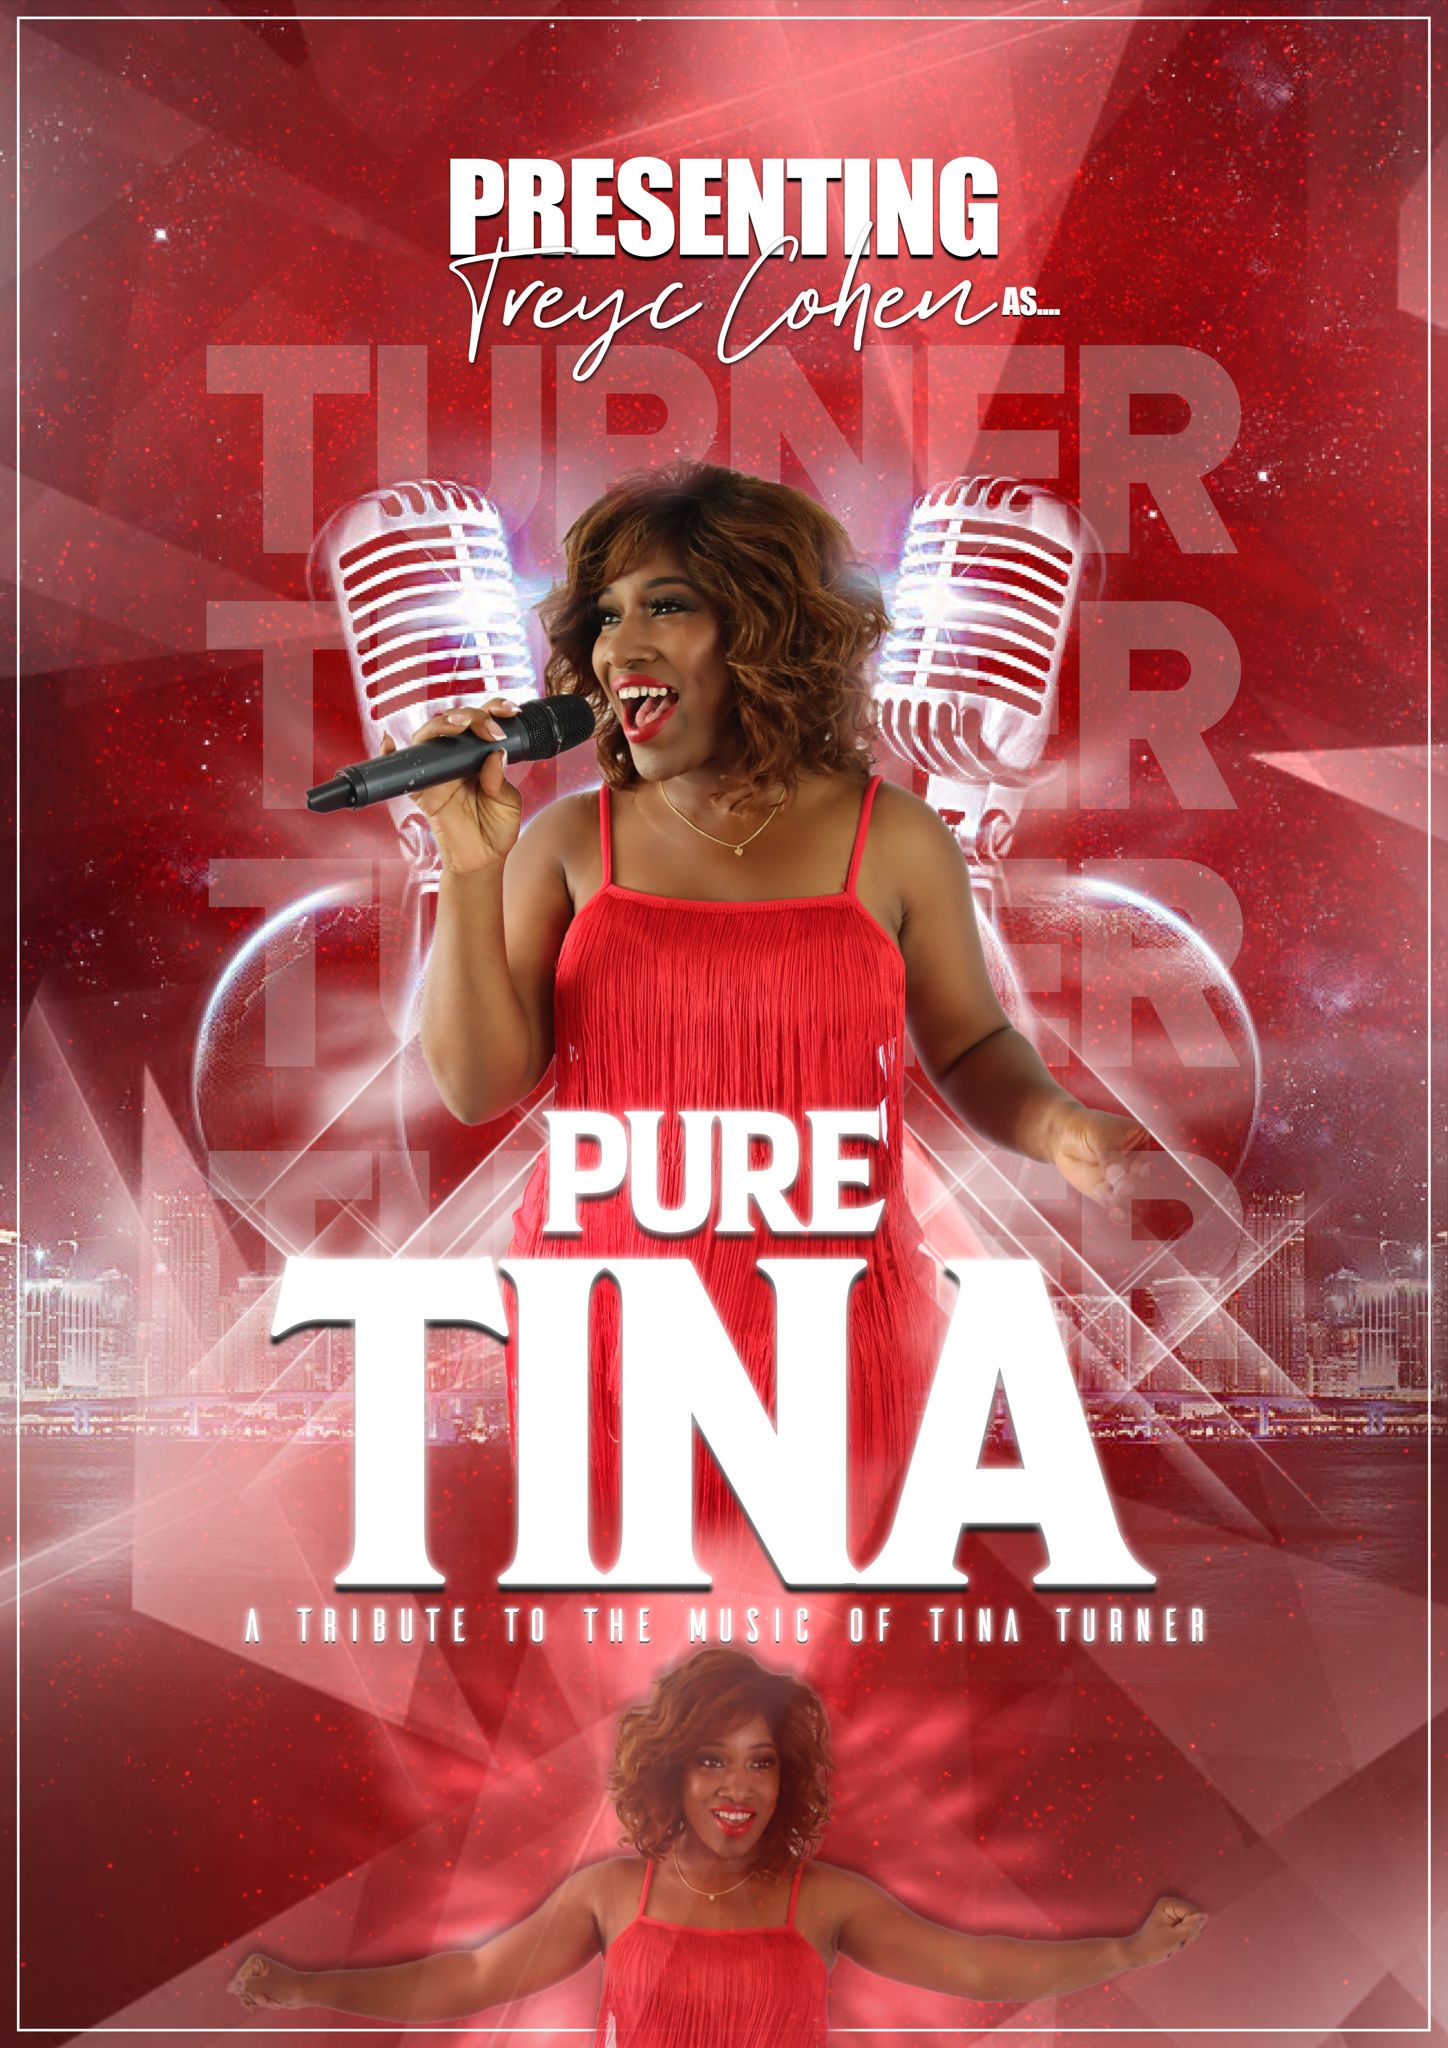 Tina Turner Tribute Night